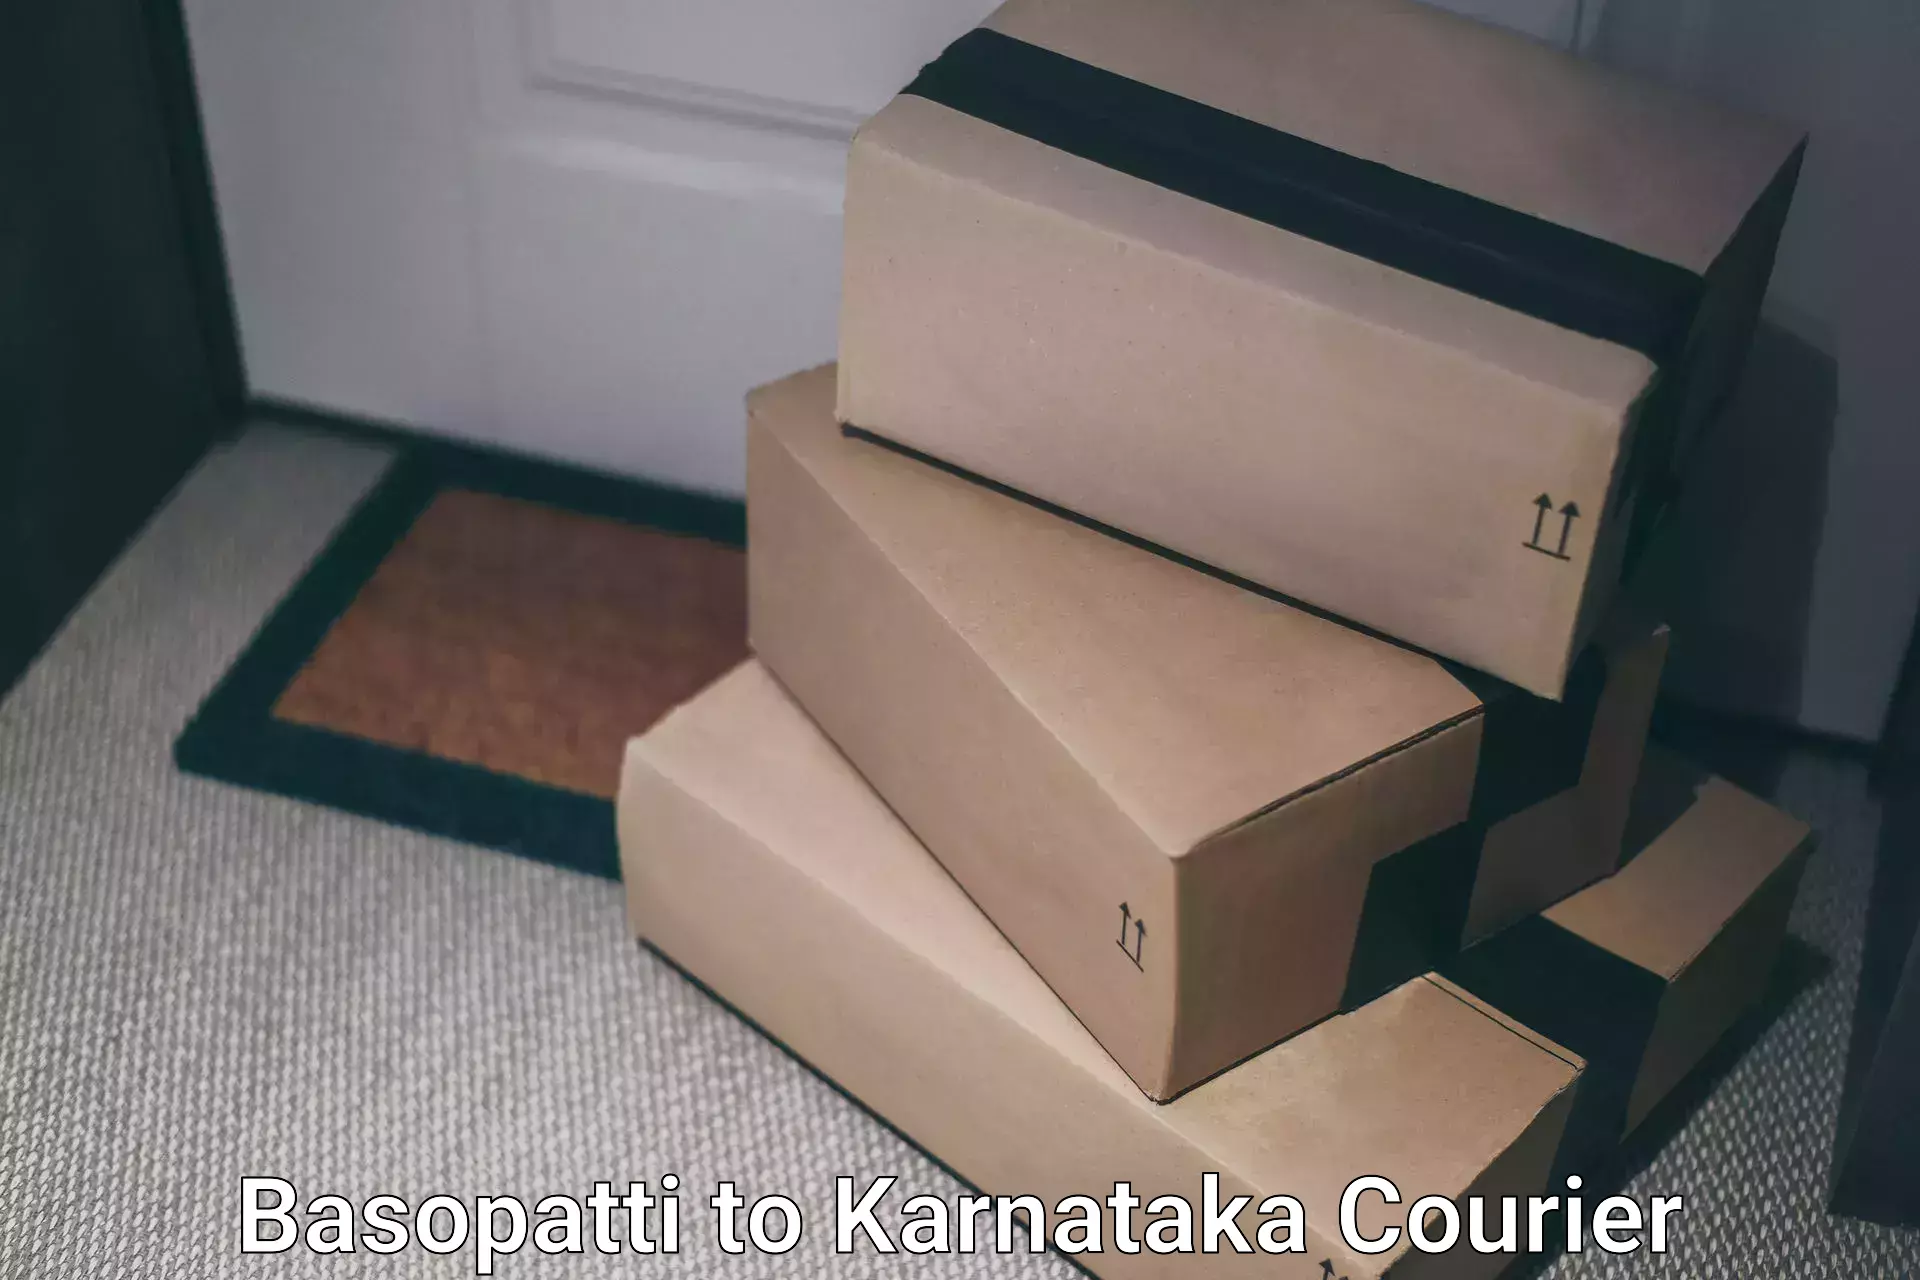 Seamless shipping experience Basopatti to Indi